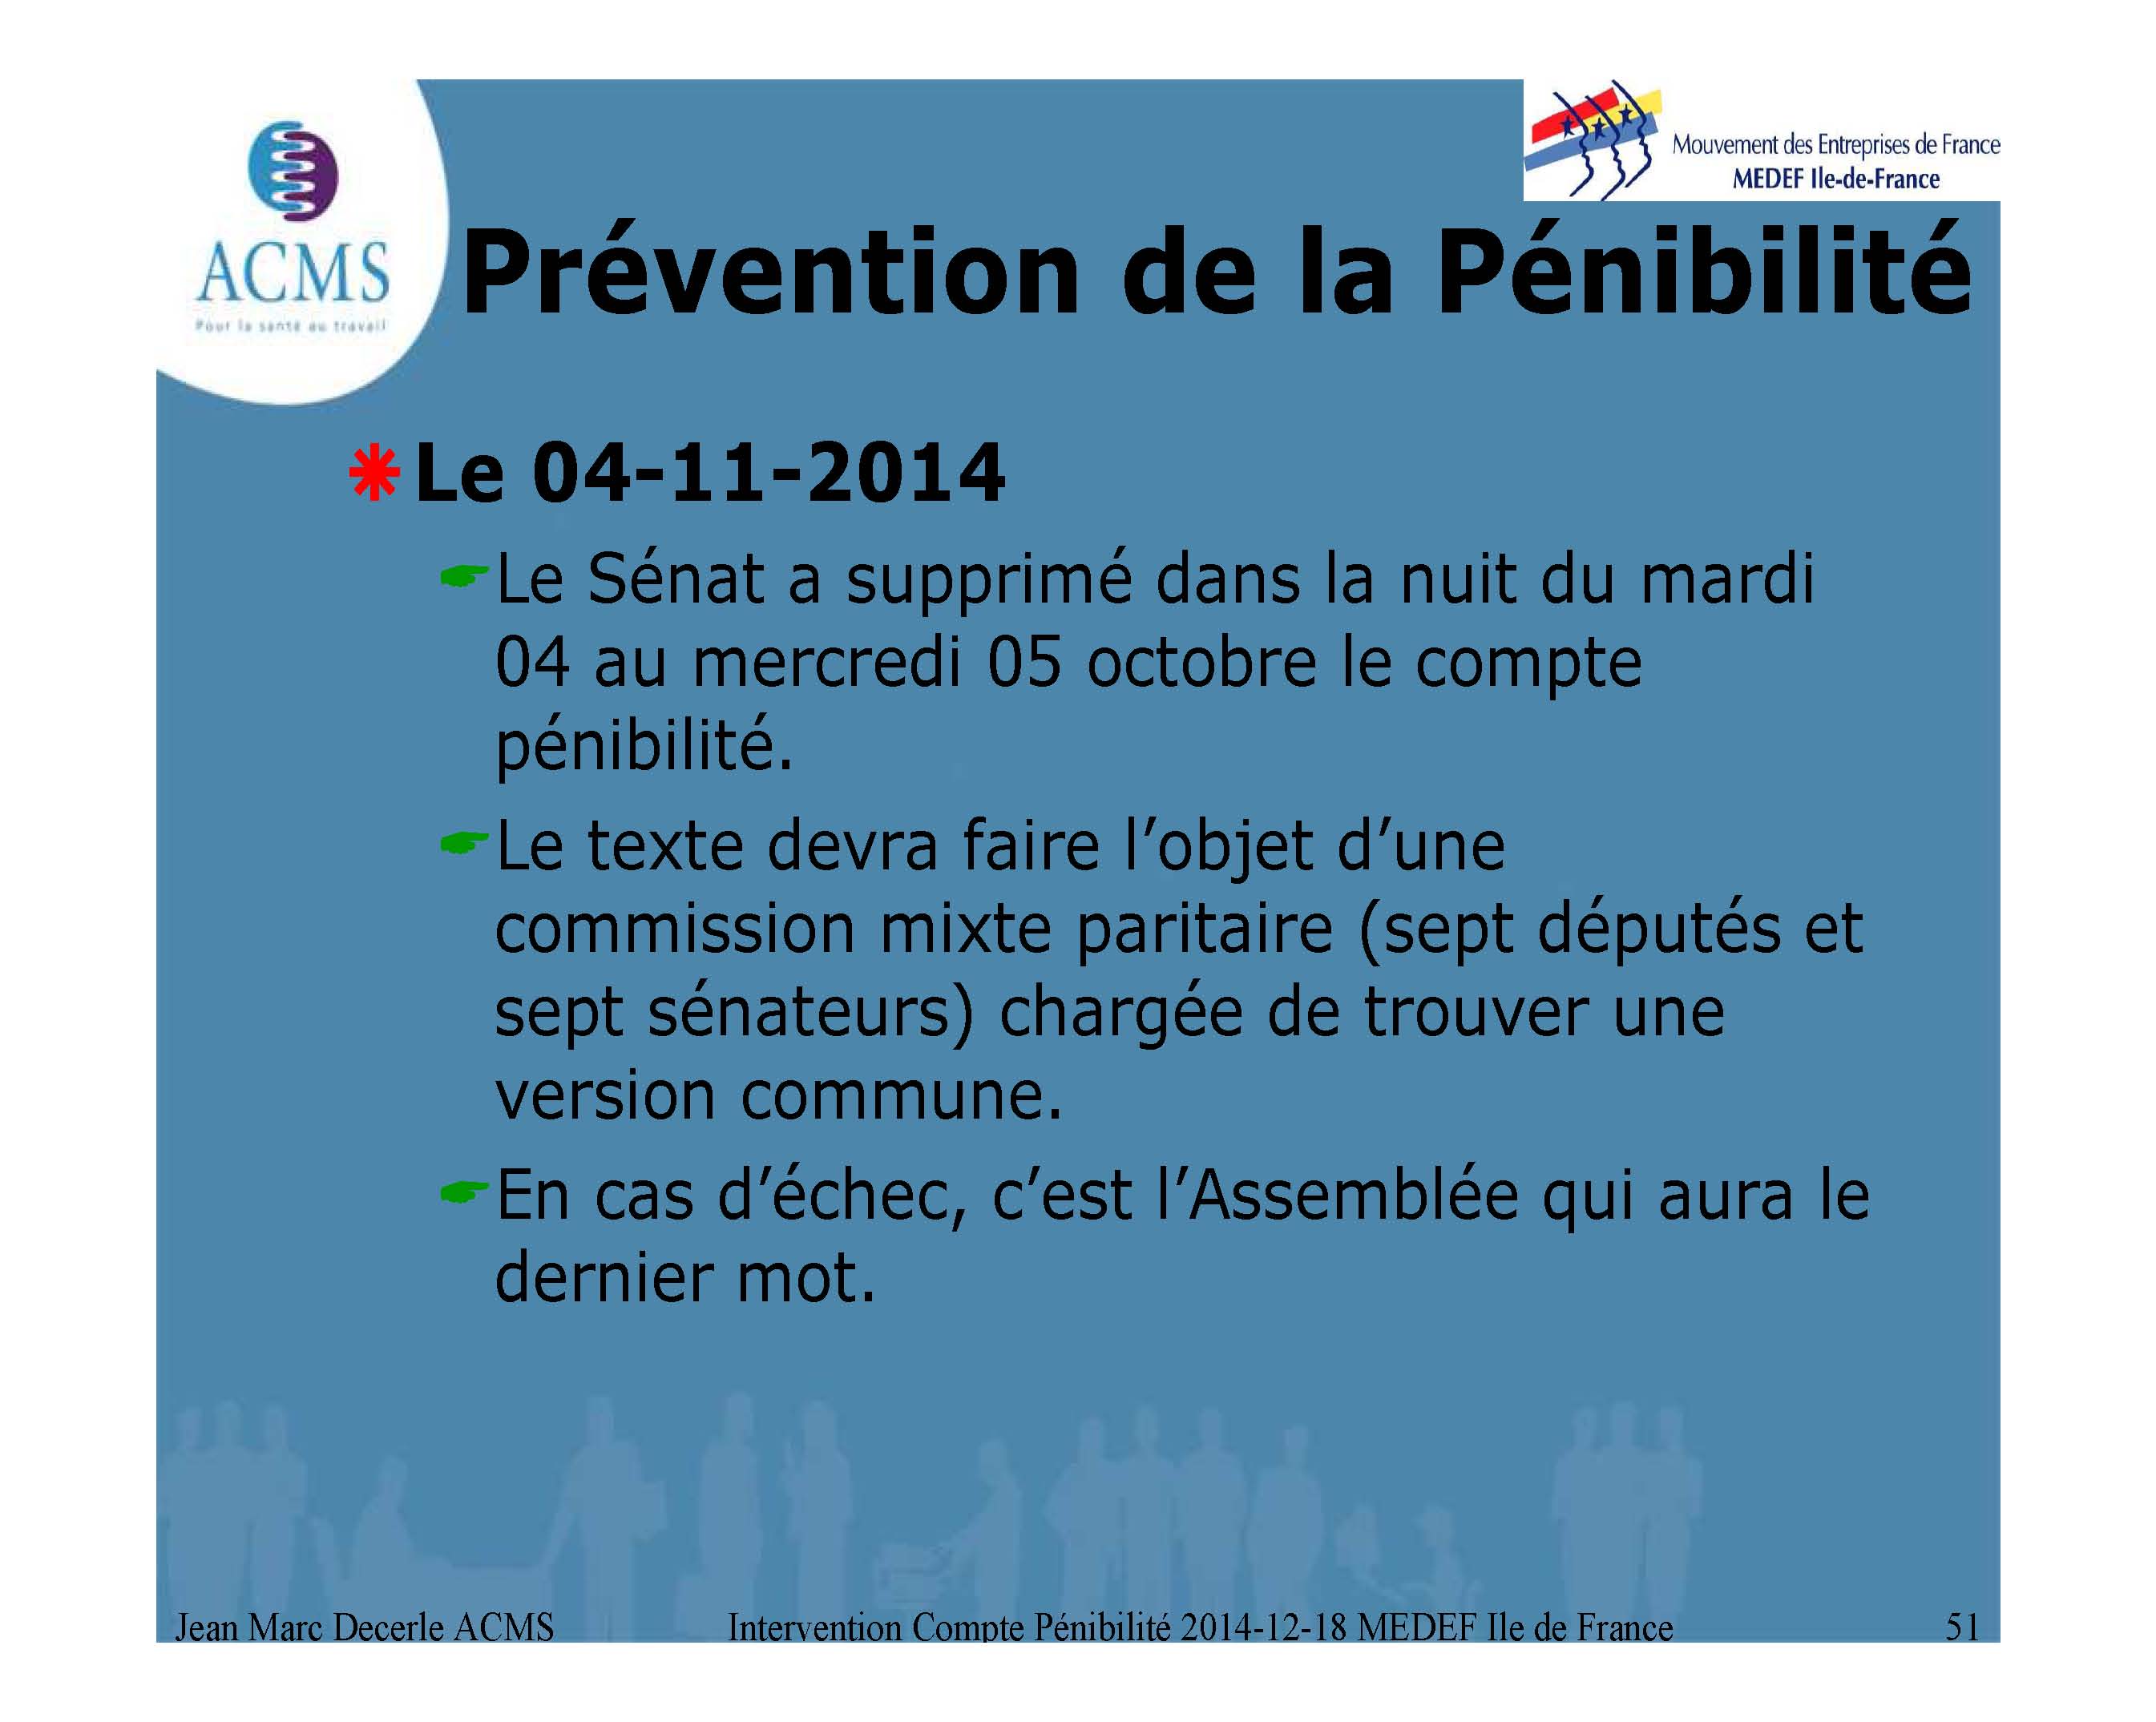 2014-12-18 Compte PÃ©nibilite MEDEF Ile de France_Page_51